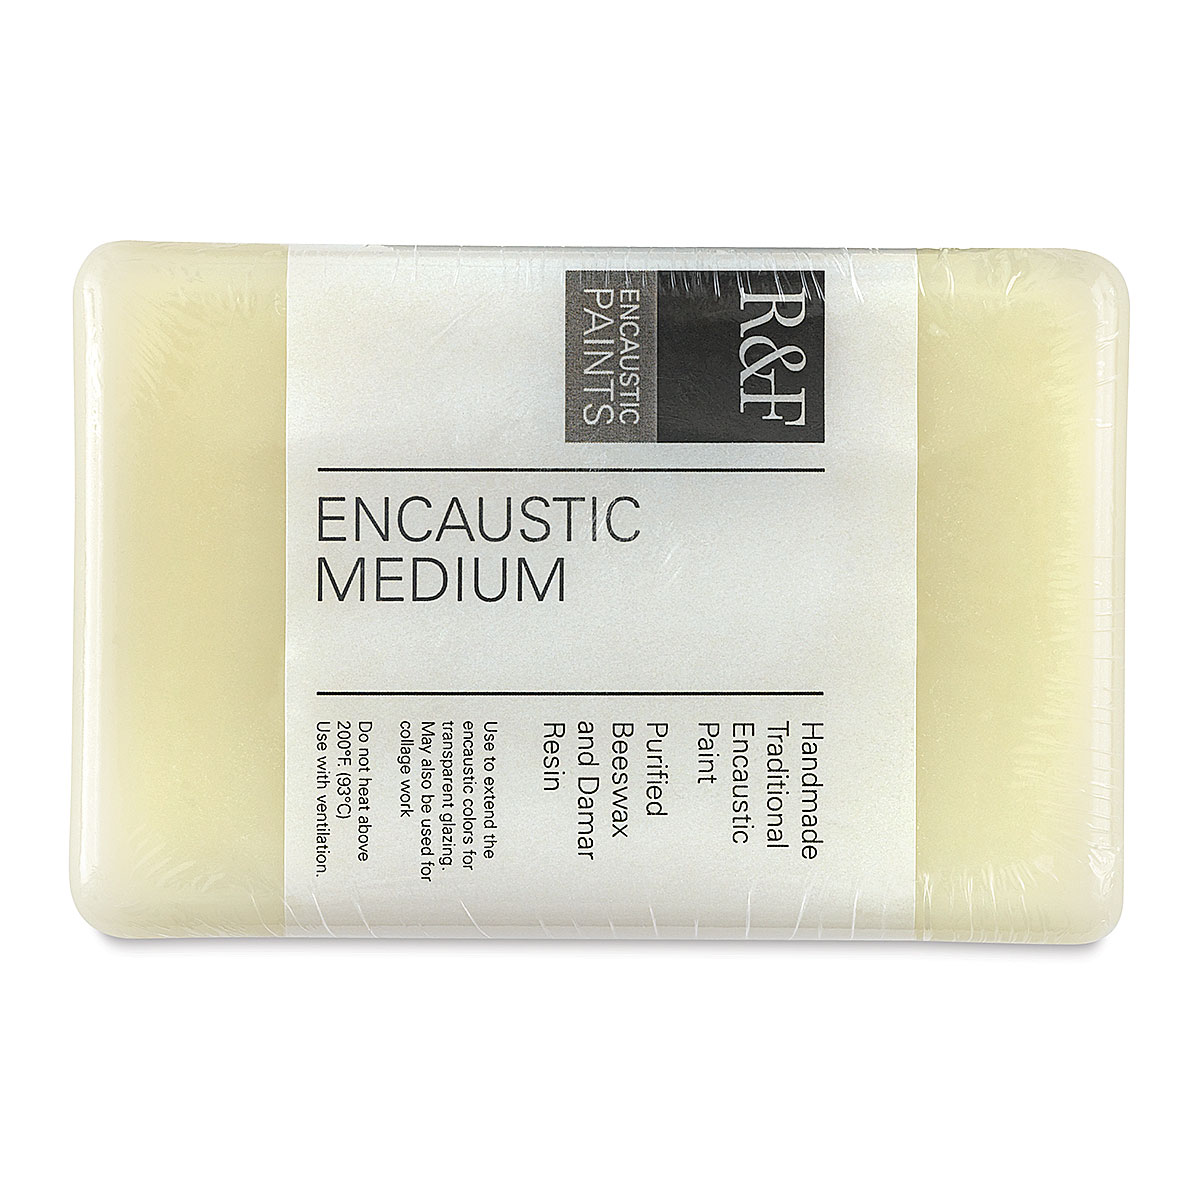 Jacquard Products — Encaustic Medium